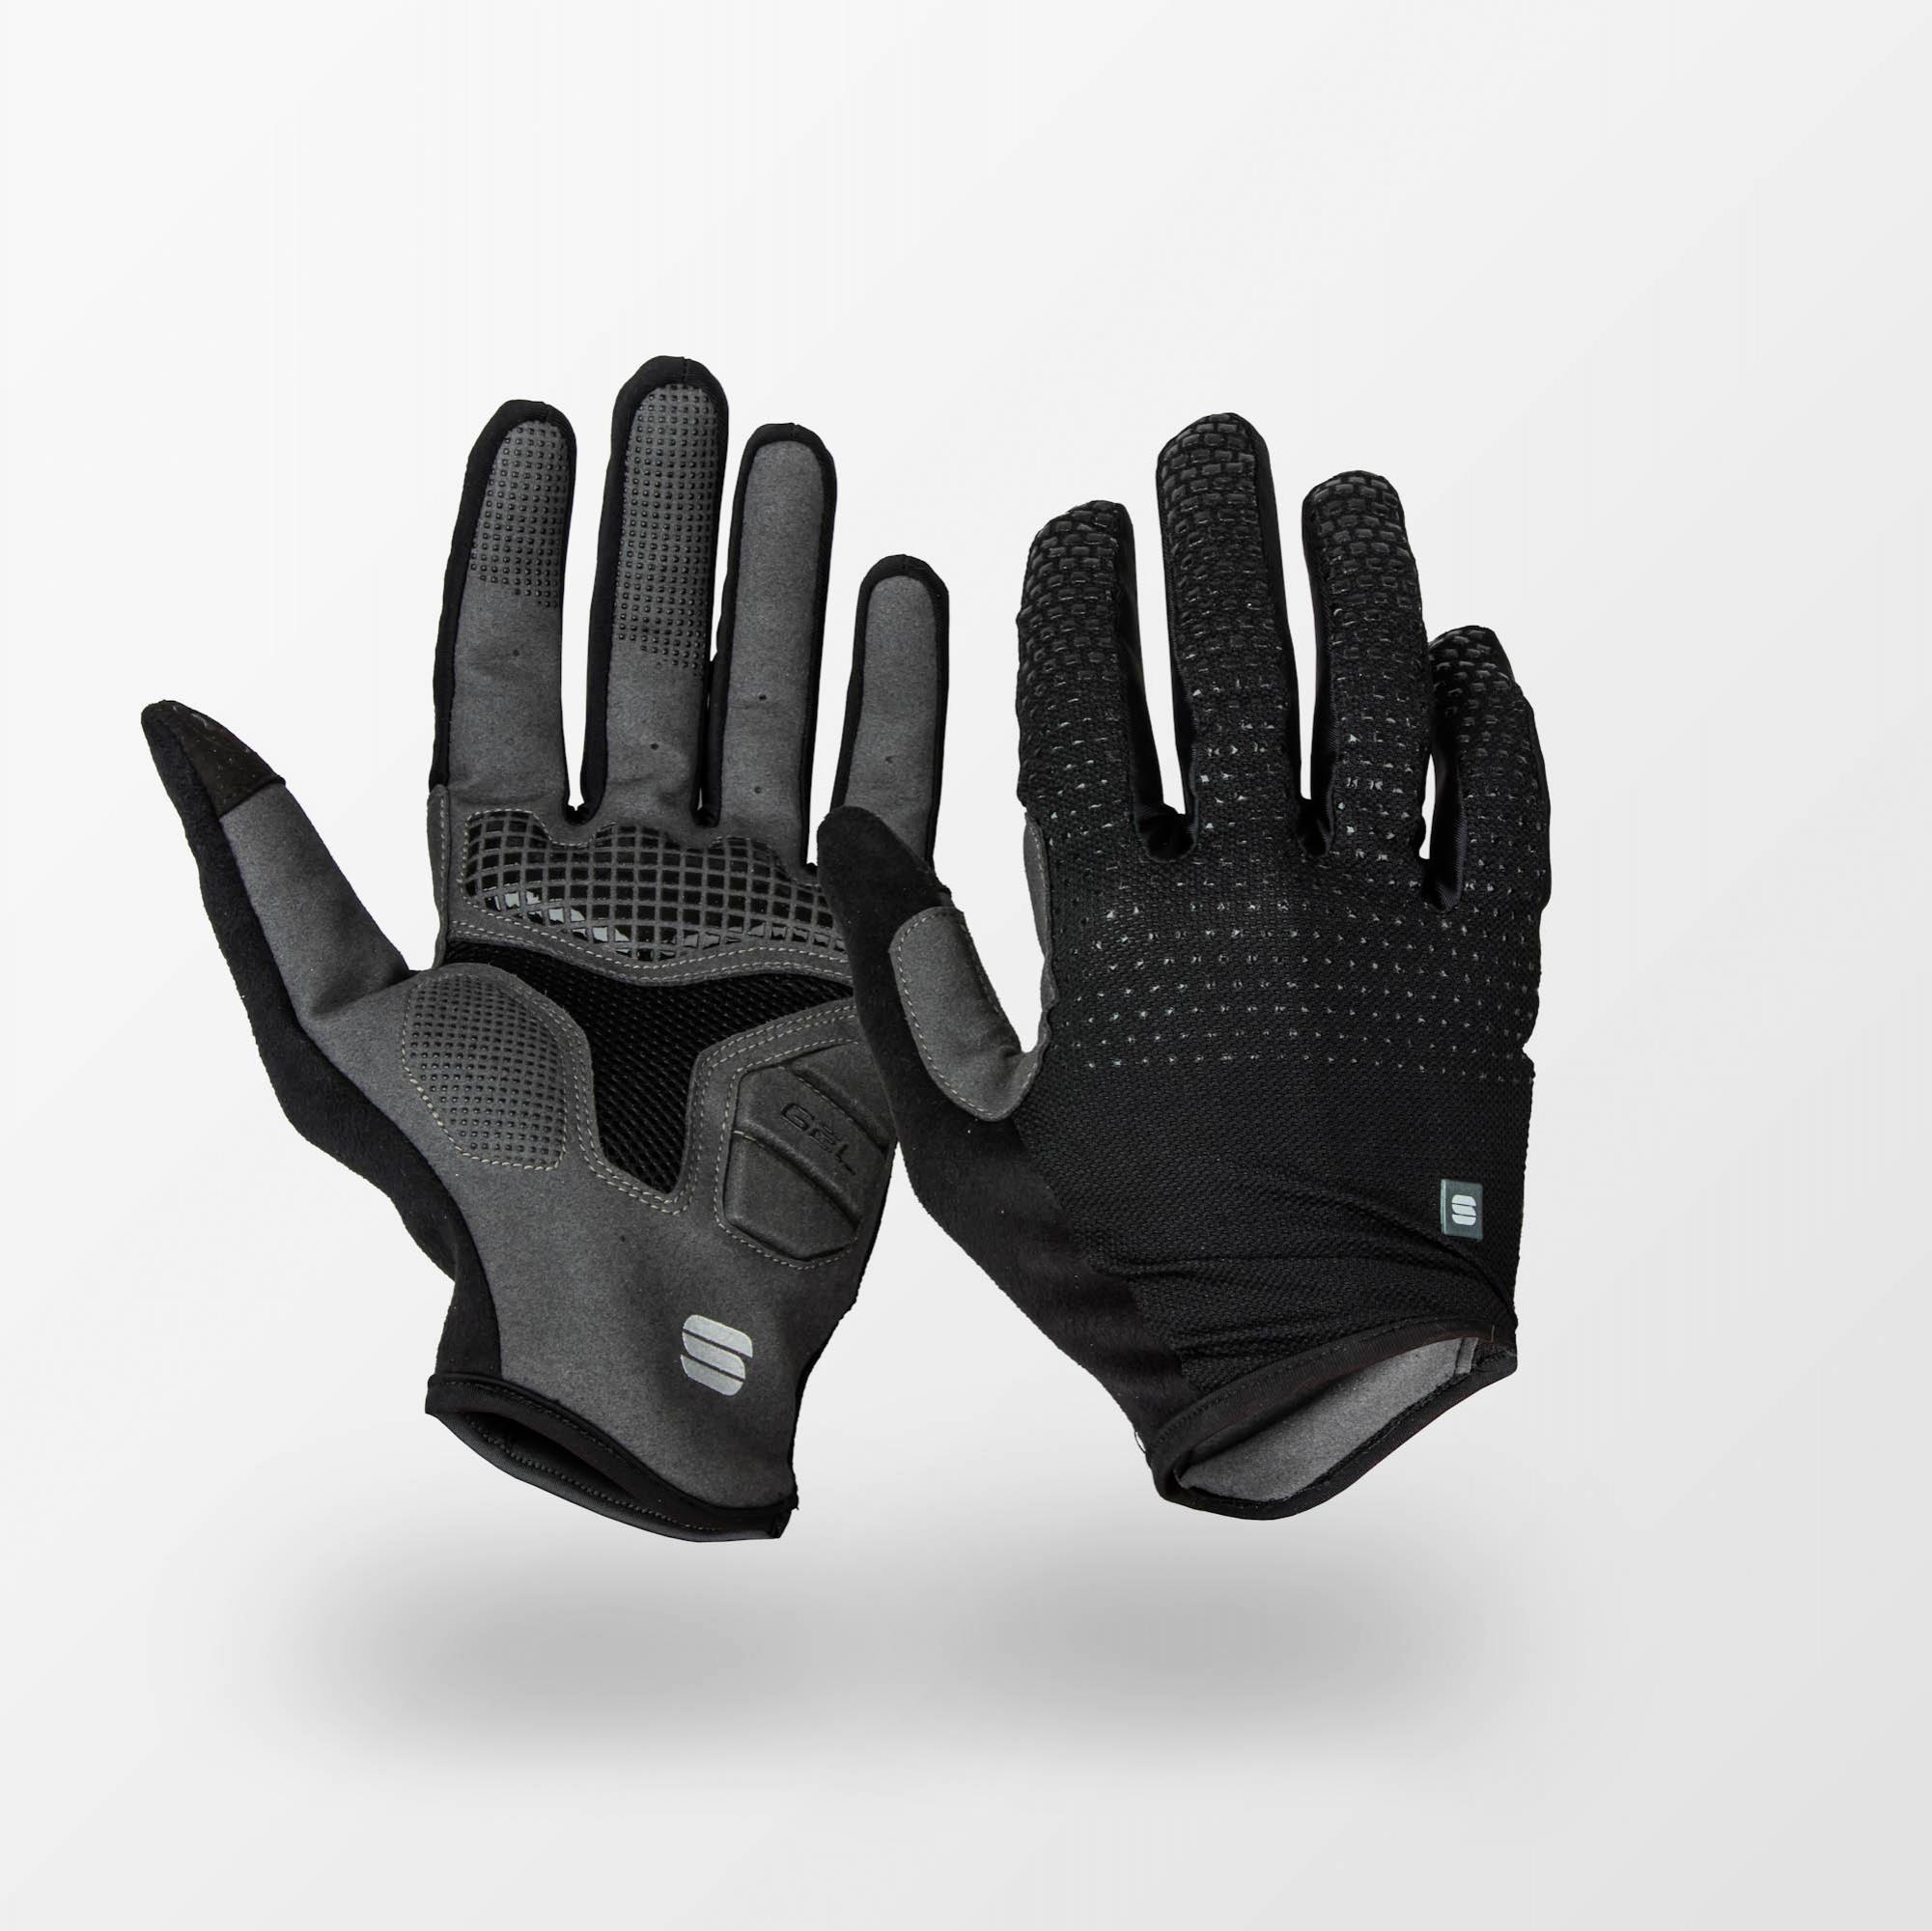 cyklistické oblečení SPORTFUL Full grip gloves, black